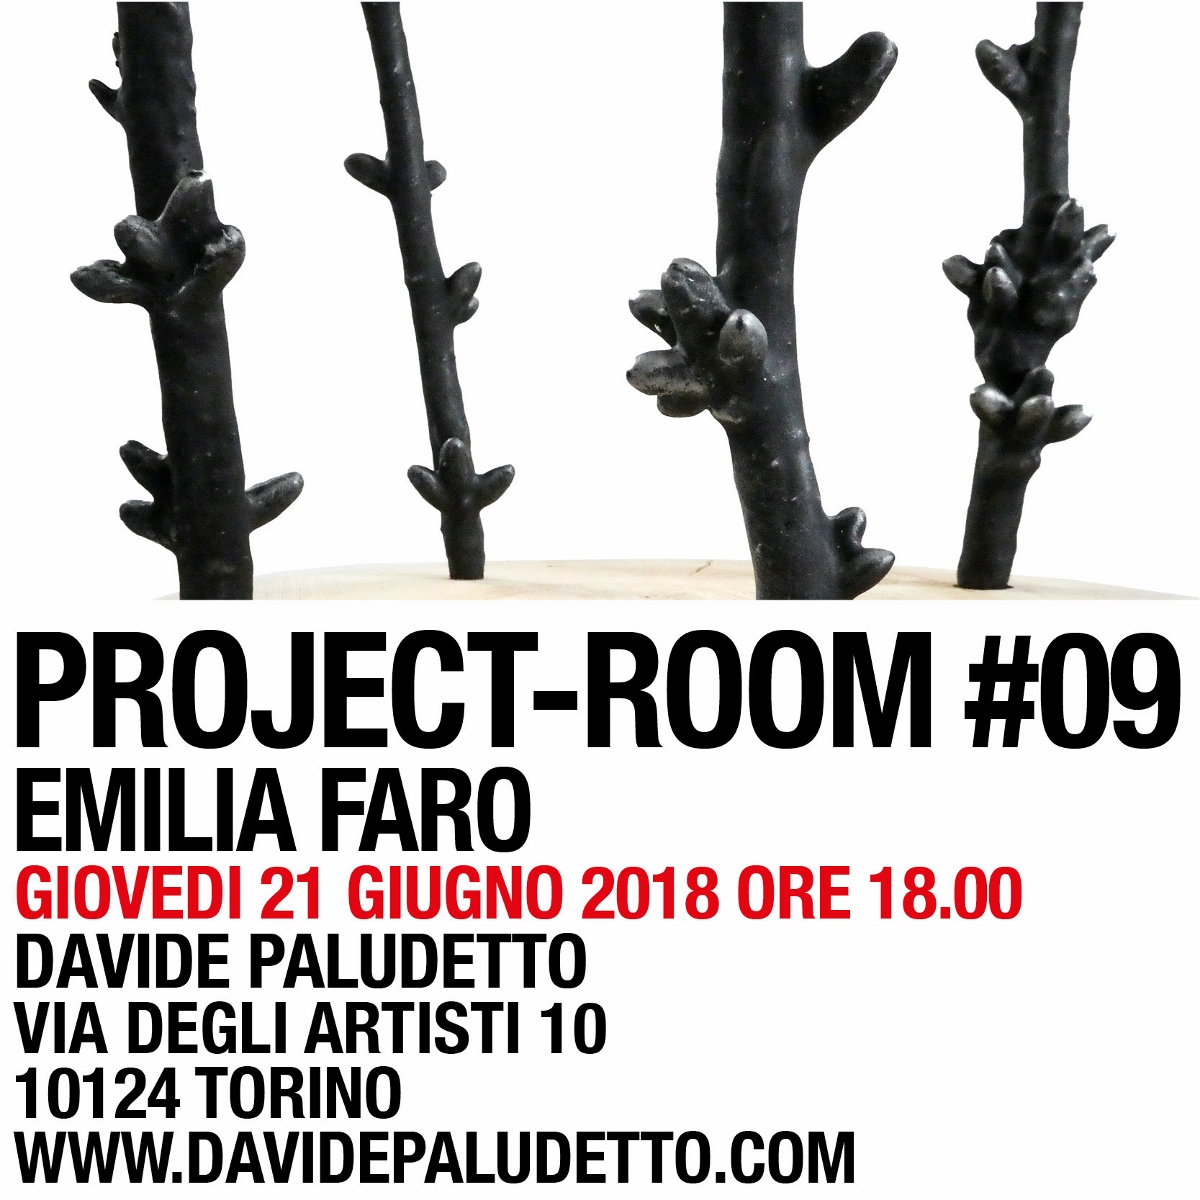 Project room #9 – Emilia Faro